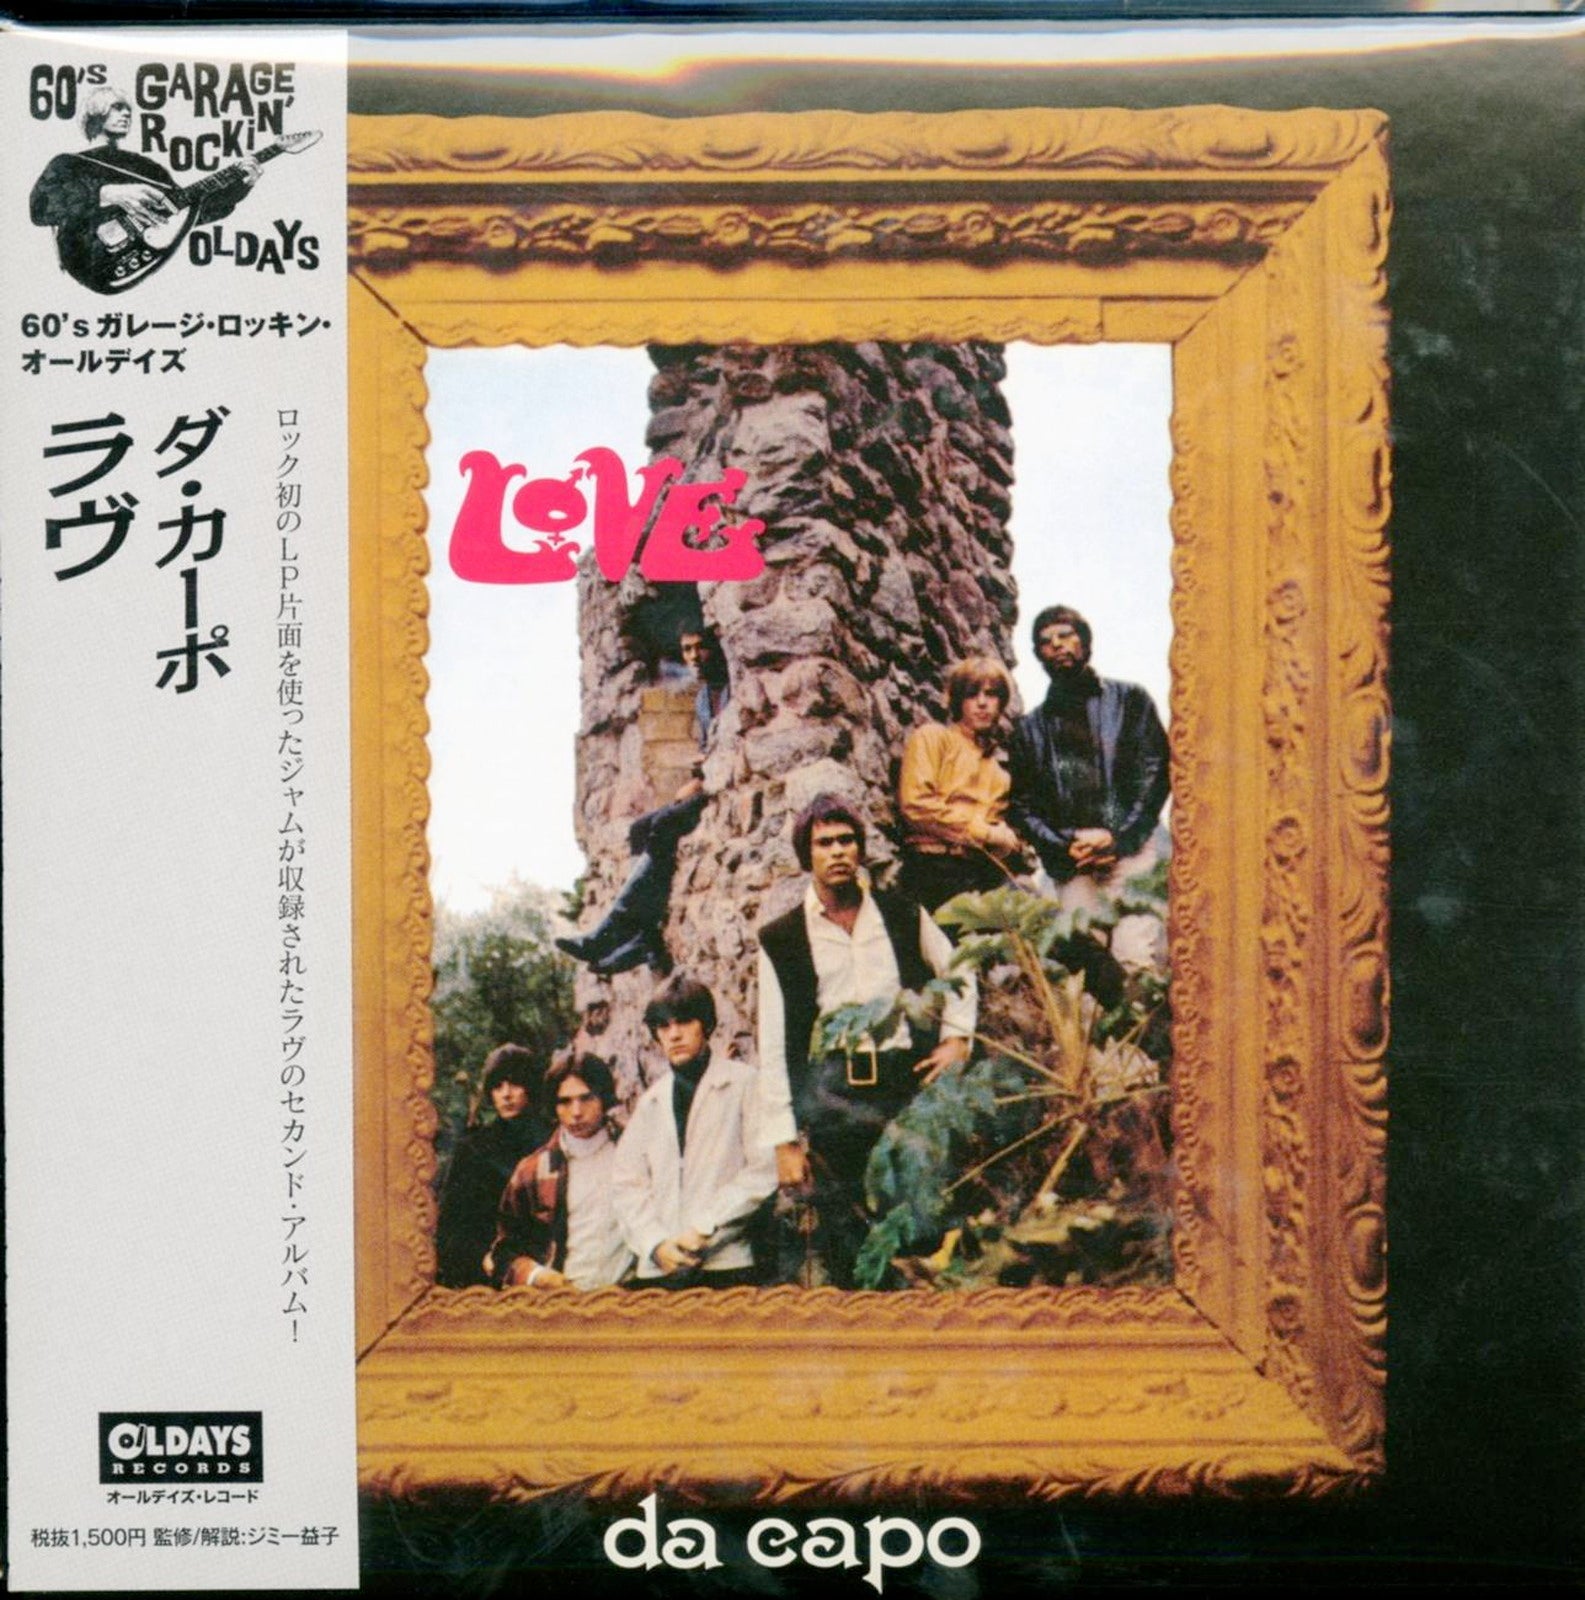 auroch tøffel kul Love - Da Capo - Japan Mini LP CD Bonus Track - CDs Vinyl Japan Store